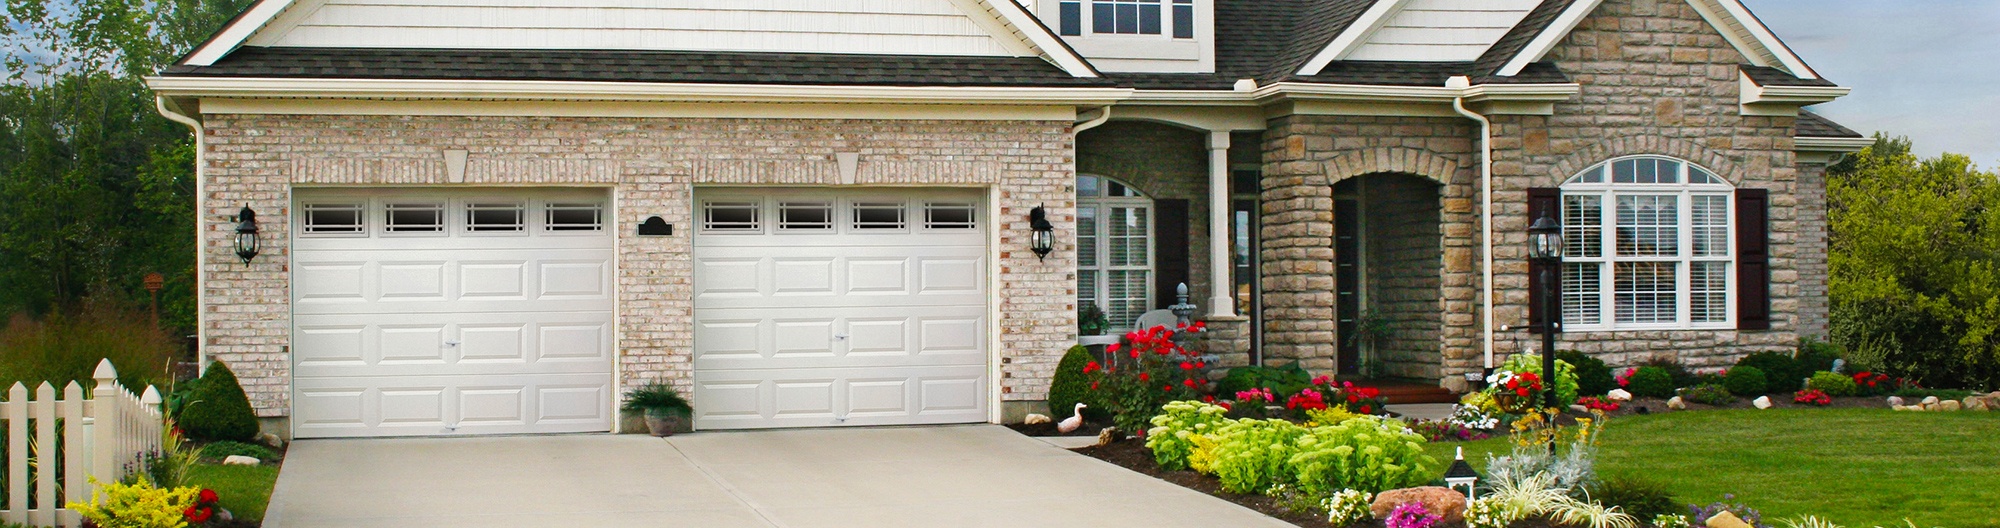 Request A Free Garage Door Estimate Consolidated Garage Doors